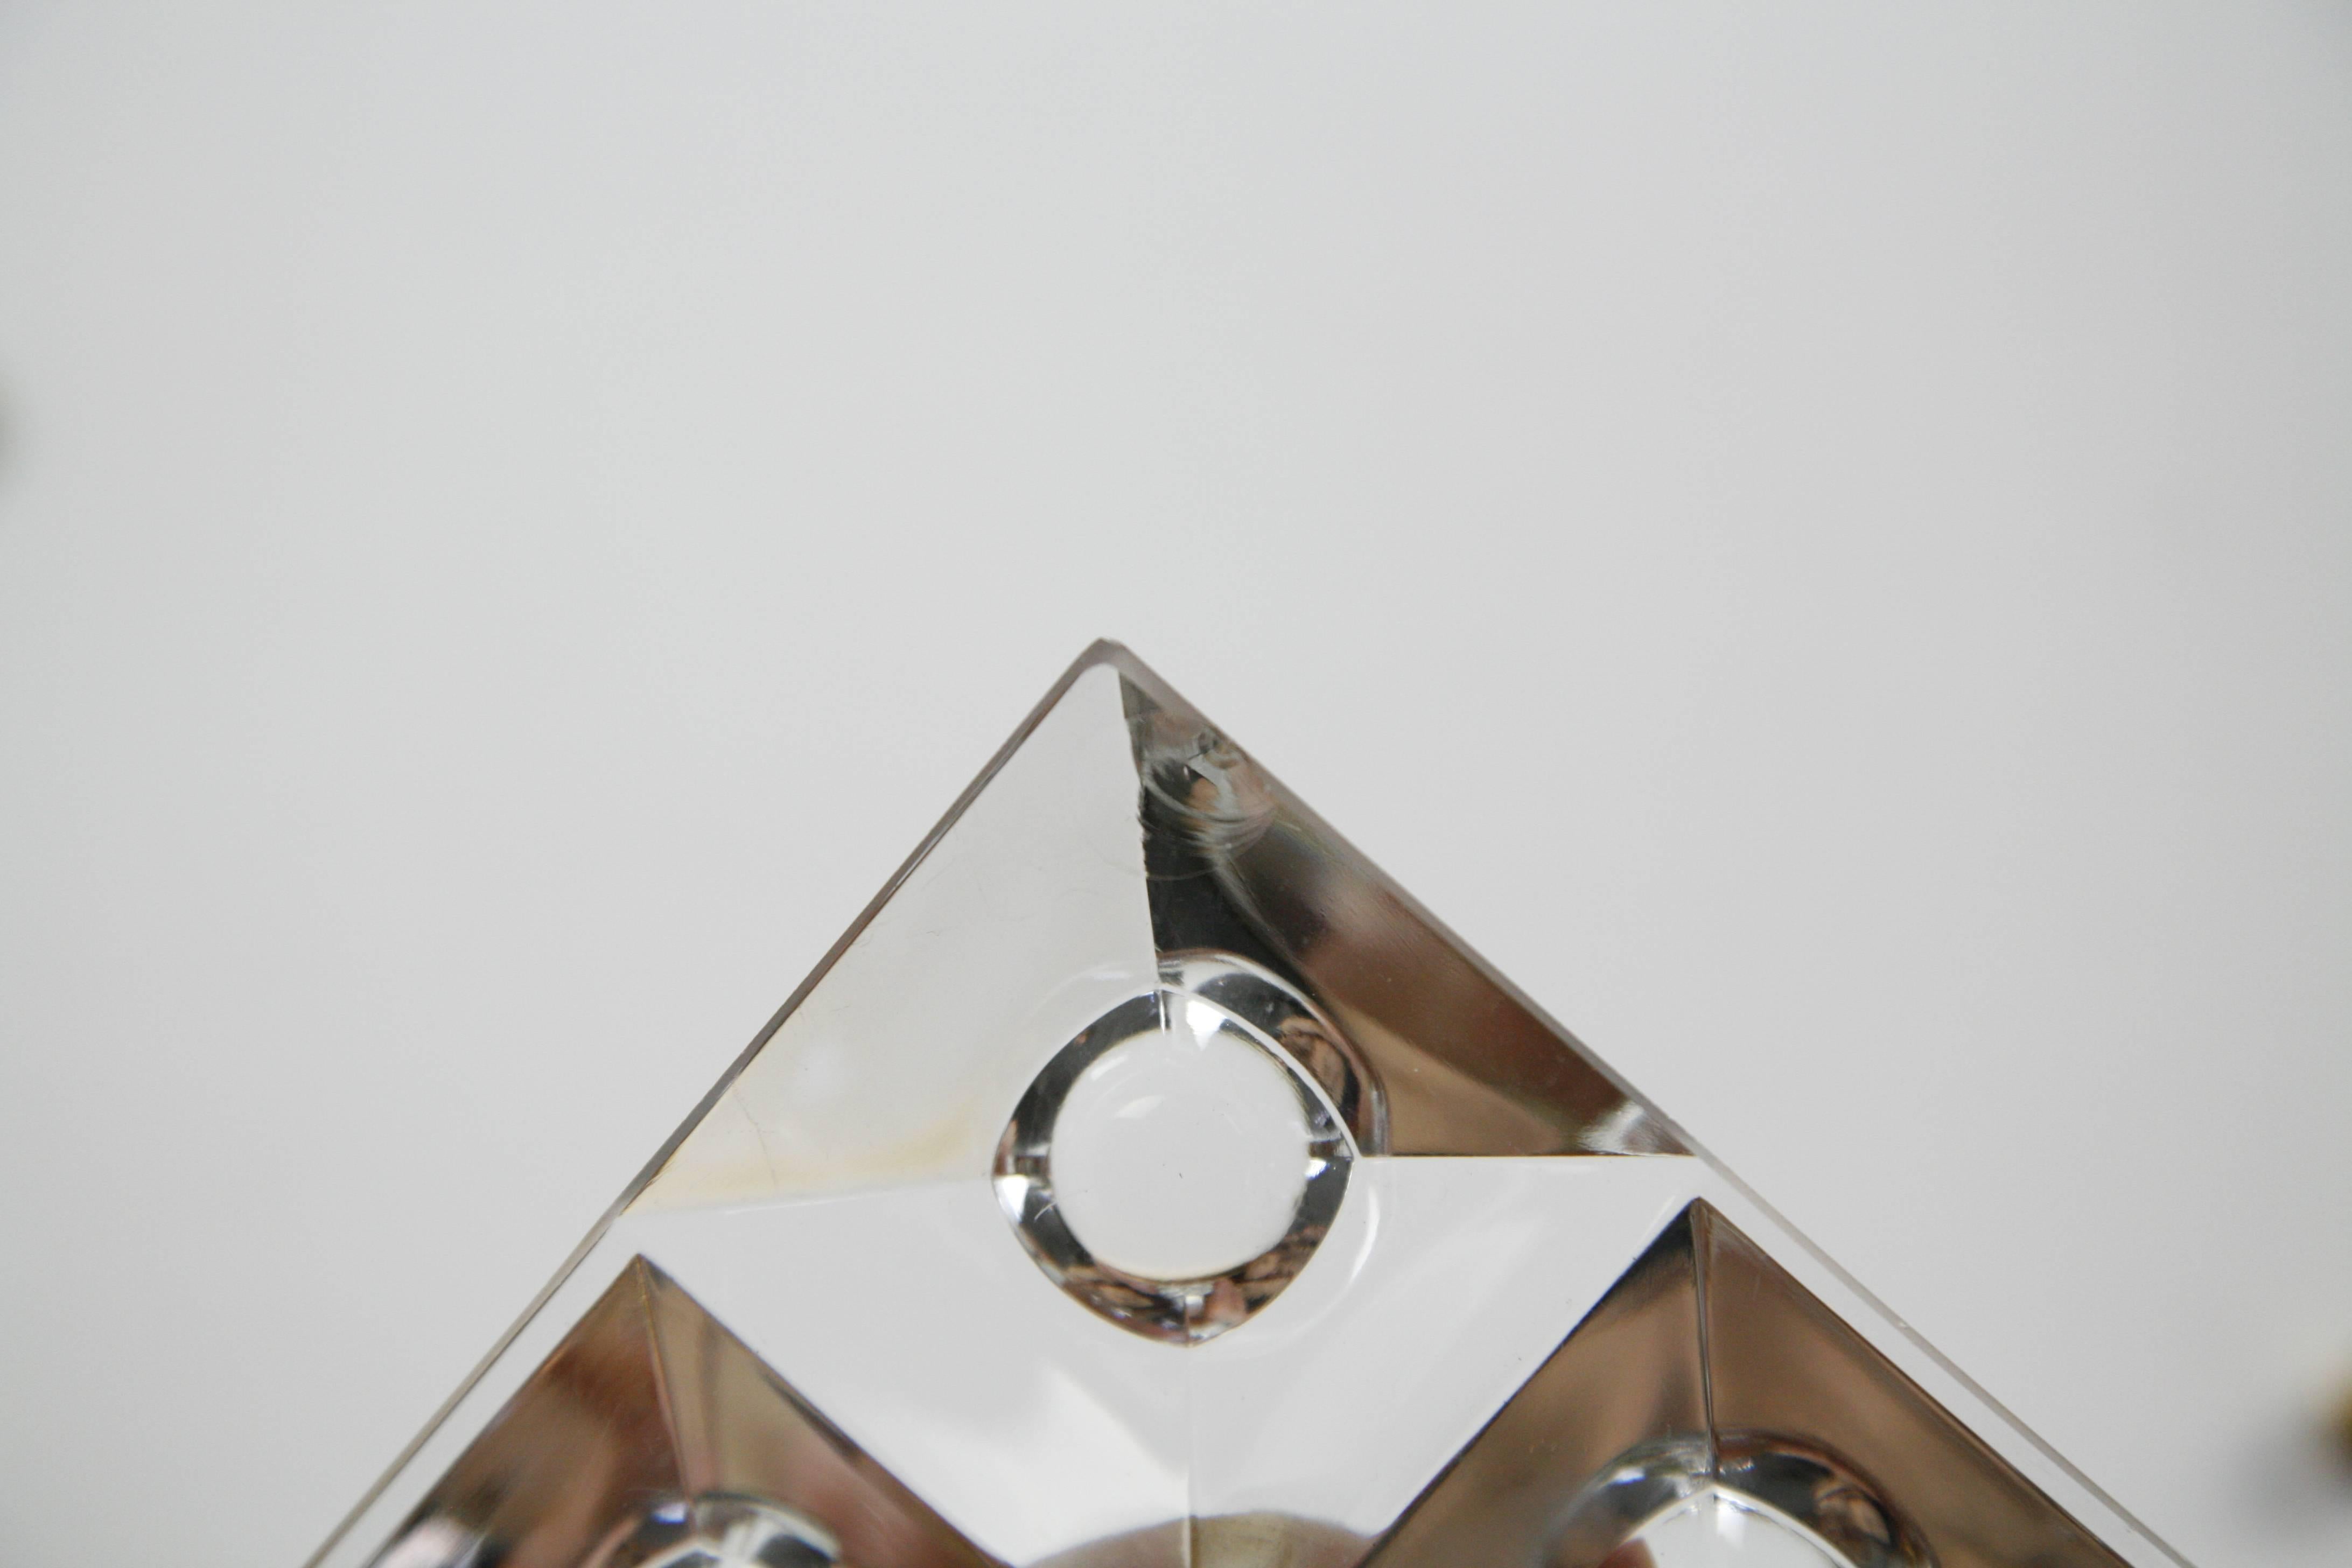 Paar Messing- und Kristallglasleuchten aus Kinkeldey, Deutschland, 1970er Jahre, Messingrahmen hat Patina, so dass sie hauptsächlich matt sind, aber auf die ursprüngliche glänzende Oberfläche poliert werden können. Sie halten vier flache